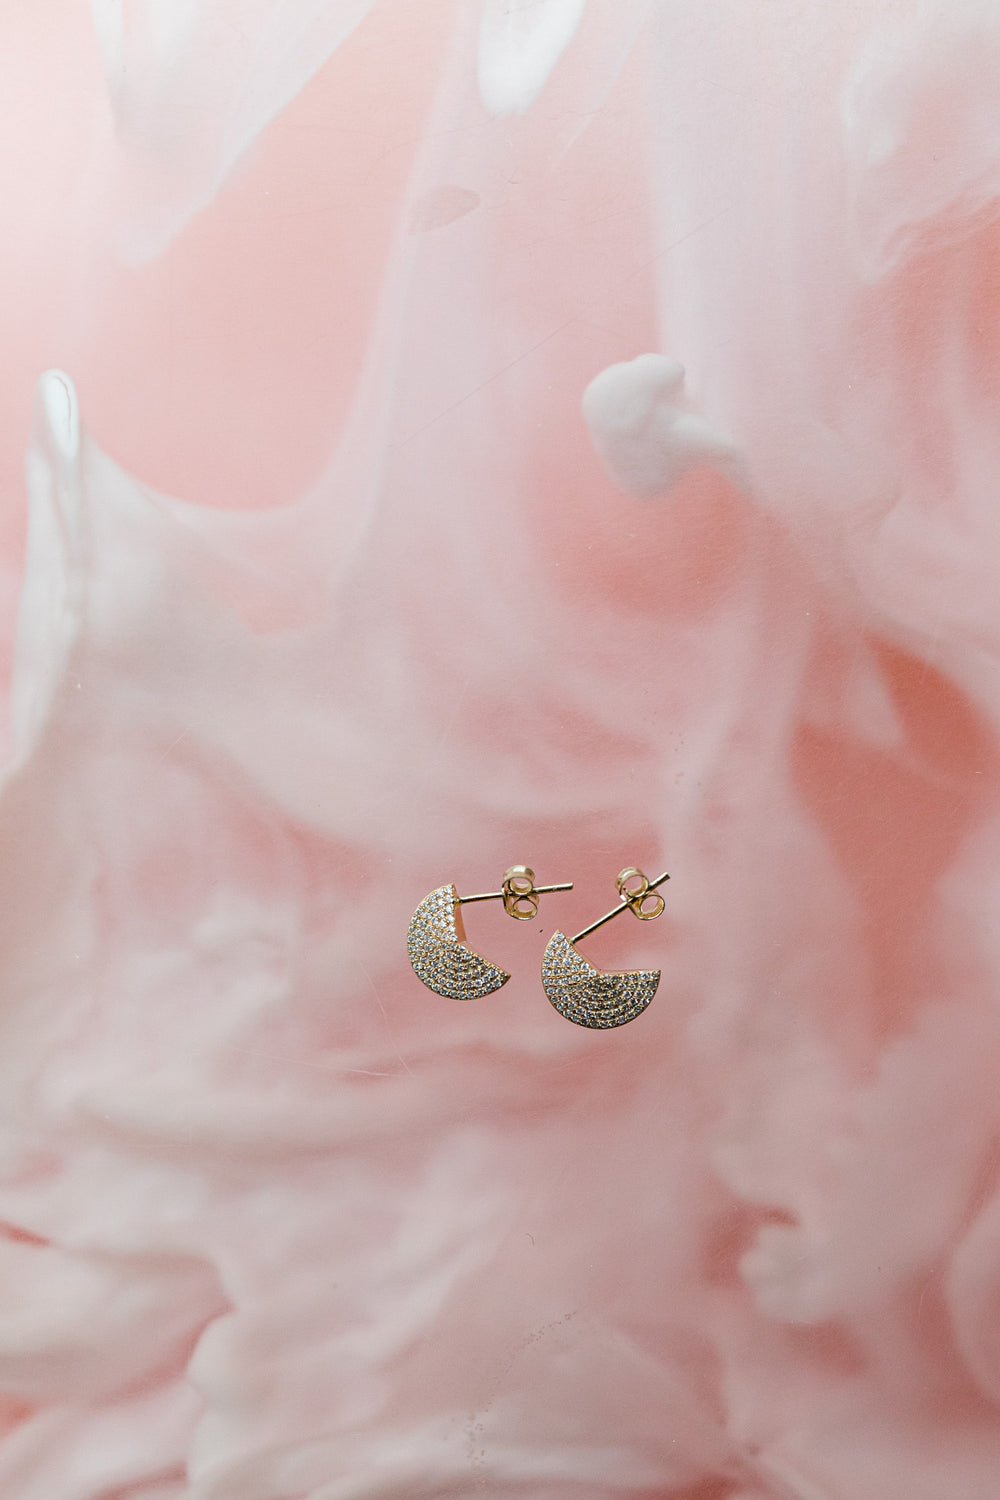 April-First-Berlin-Fine-Jewelry-14k-Gold-Diamond-Dome-Earrings